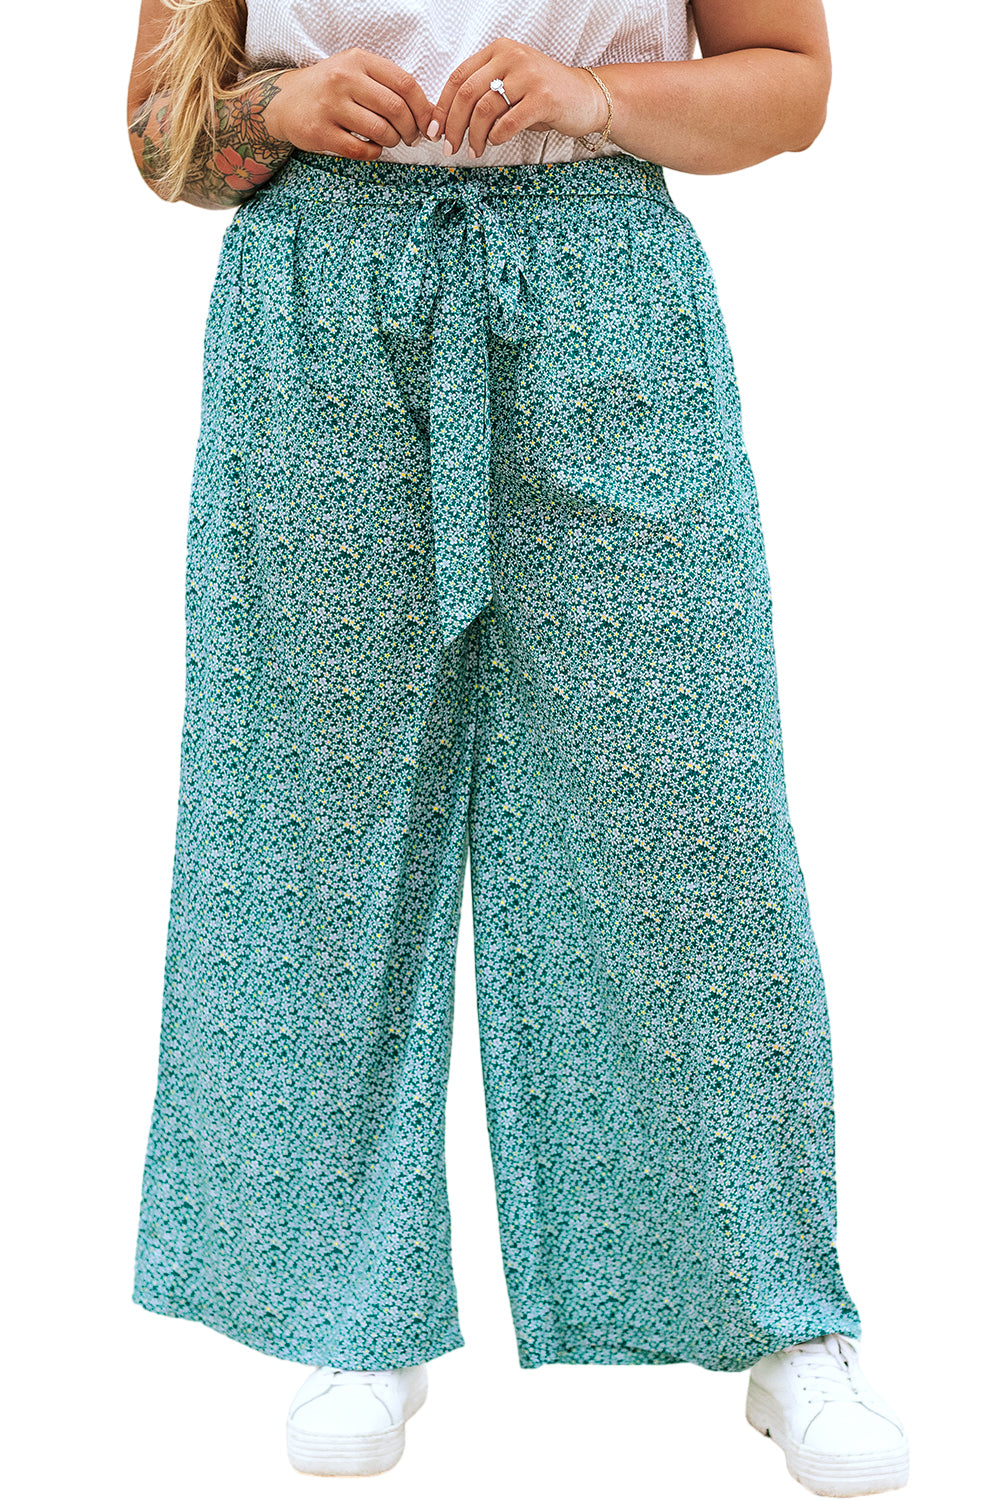 Grüne Plus-Size-Hose mit Blumenmuster, Taillenbund und weitem Bein